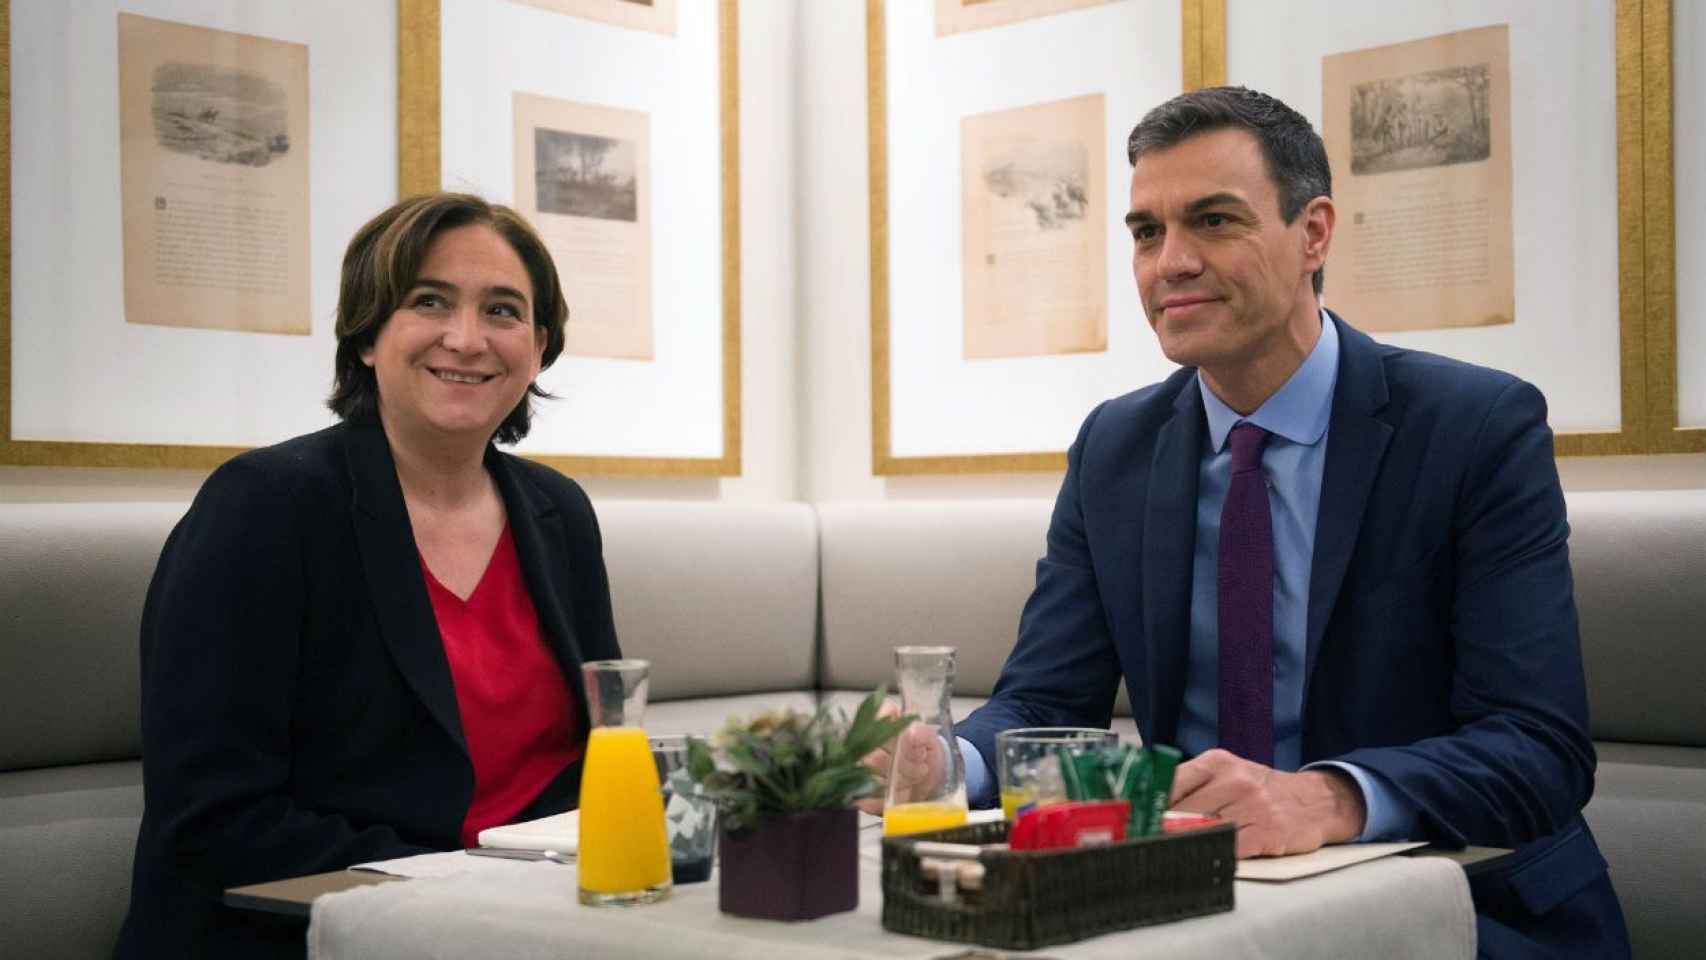 La alcaldesa de Barcelona, Ada Colau, junto al presidente del gobierno en funciones, Pedro Sánchez